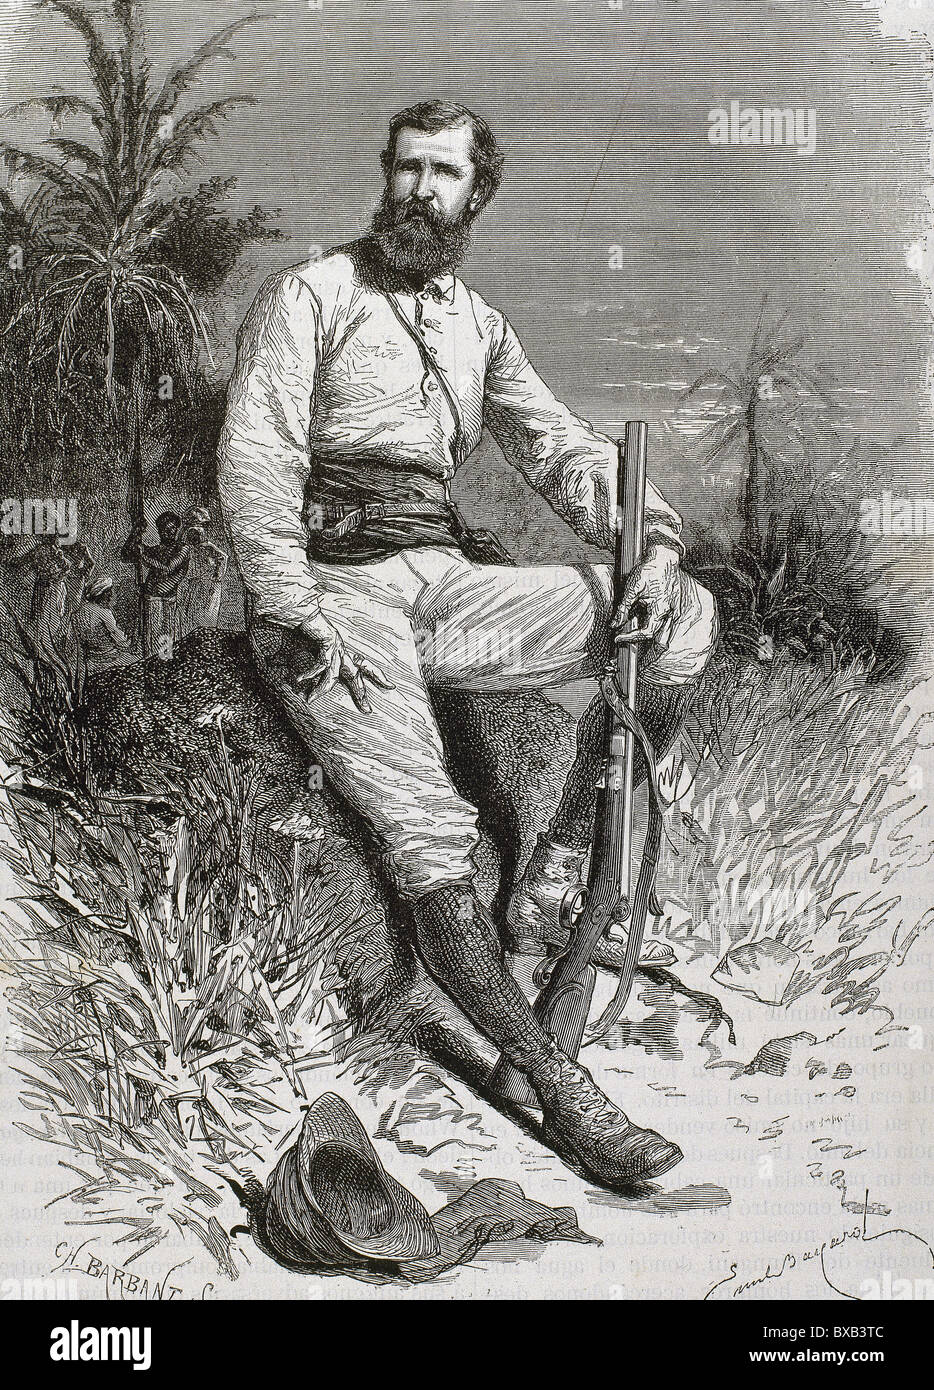 Cameron, Verney Lovett (1844-1894). Viaggiatori inglesi e explorer. Incisione di Barbant. Foto Stock